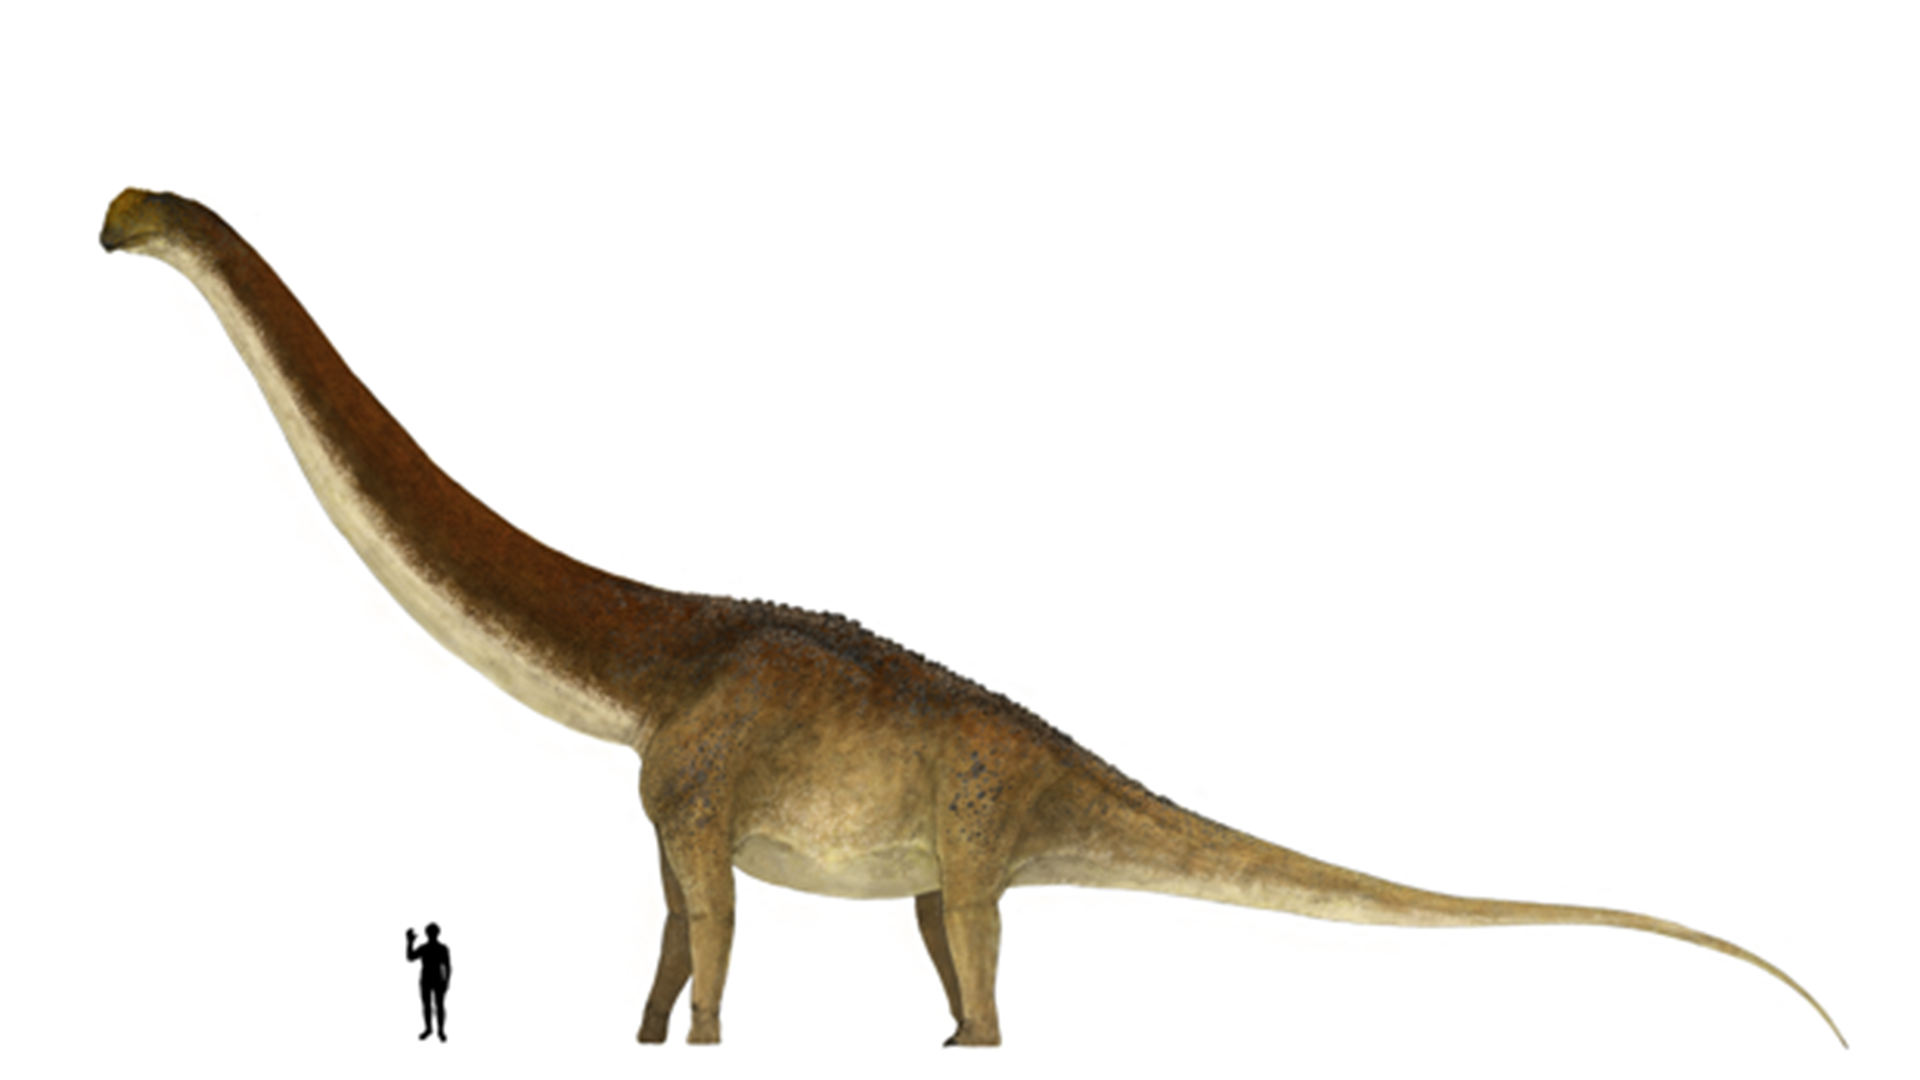 Descubrieron restos fósiles de una nueva especie de dinosaurio en Argentina  que podría ser “el más grande de la historia” - Infobae